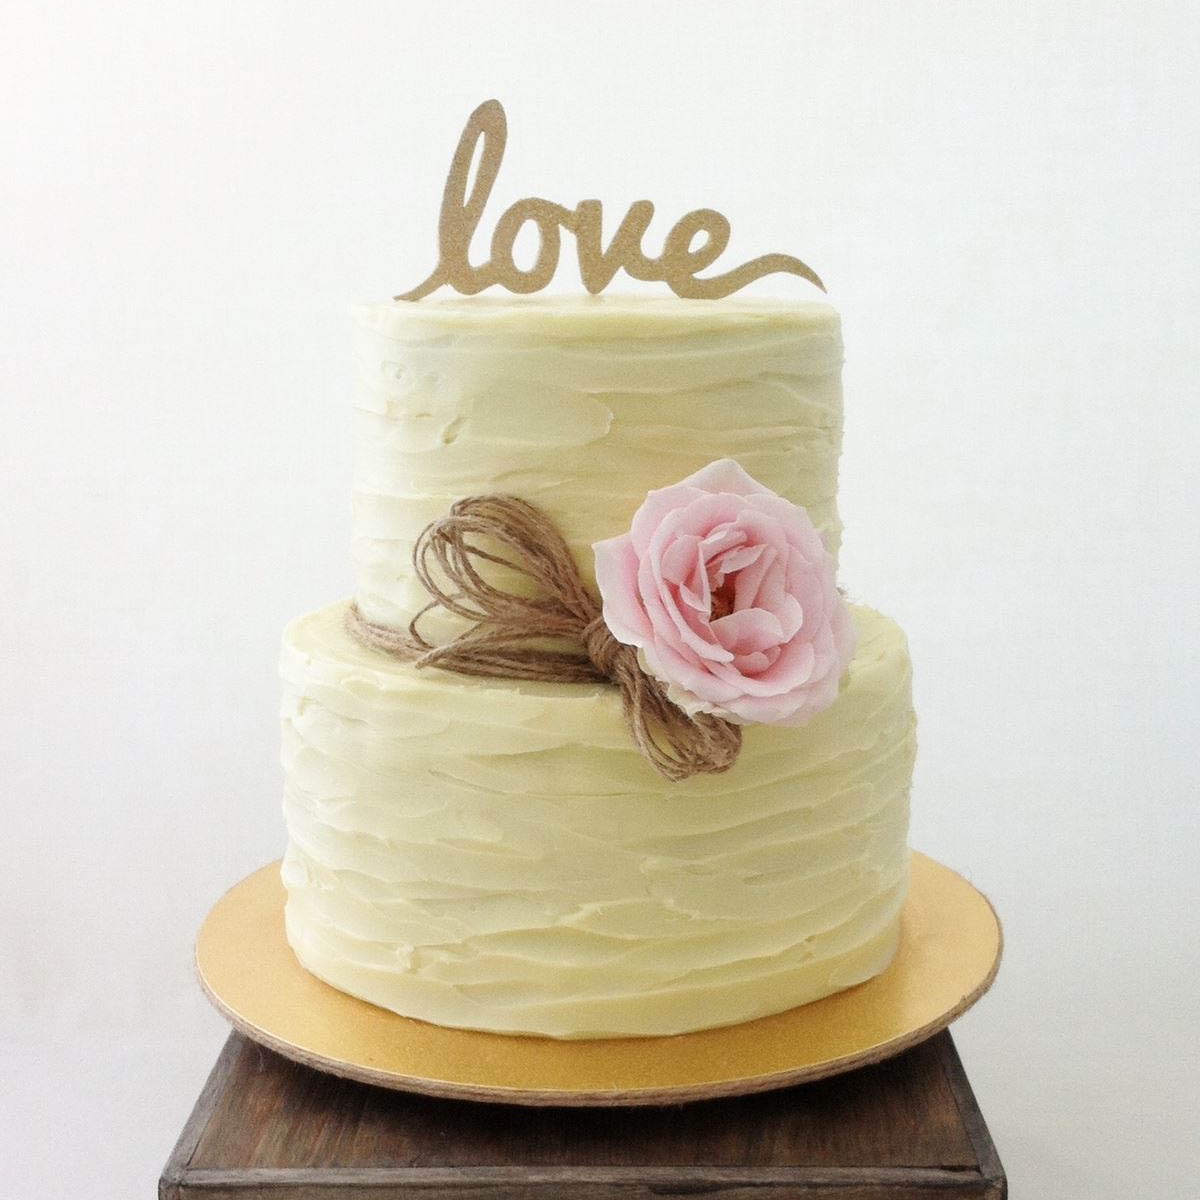 Grand Wedding- Red Velvet Cake (1.5 Kg) | CakeGift.in